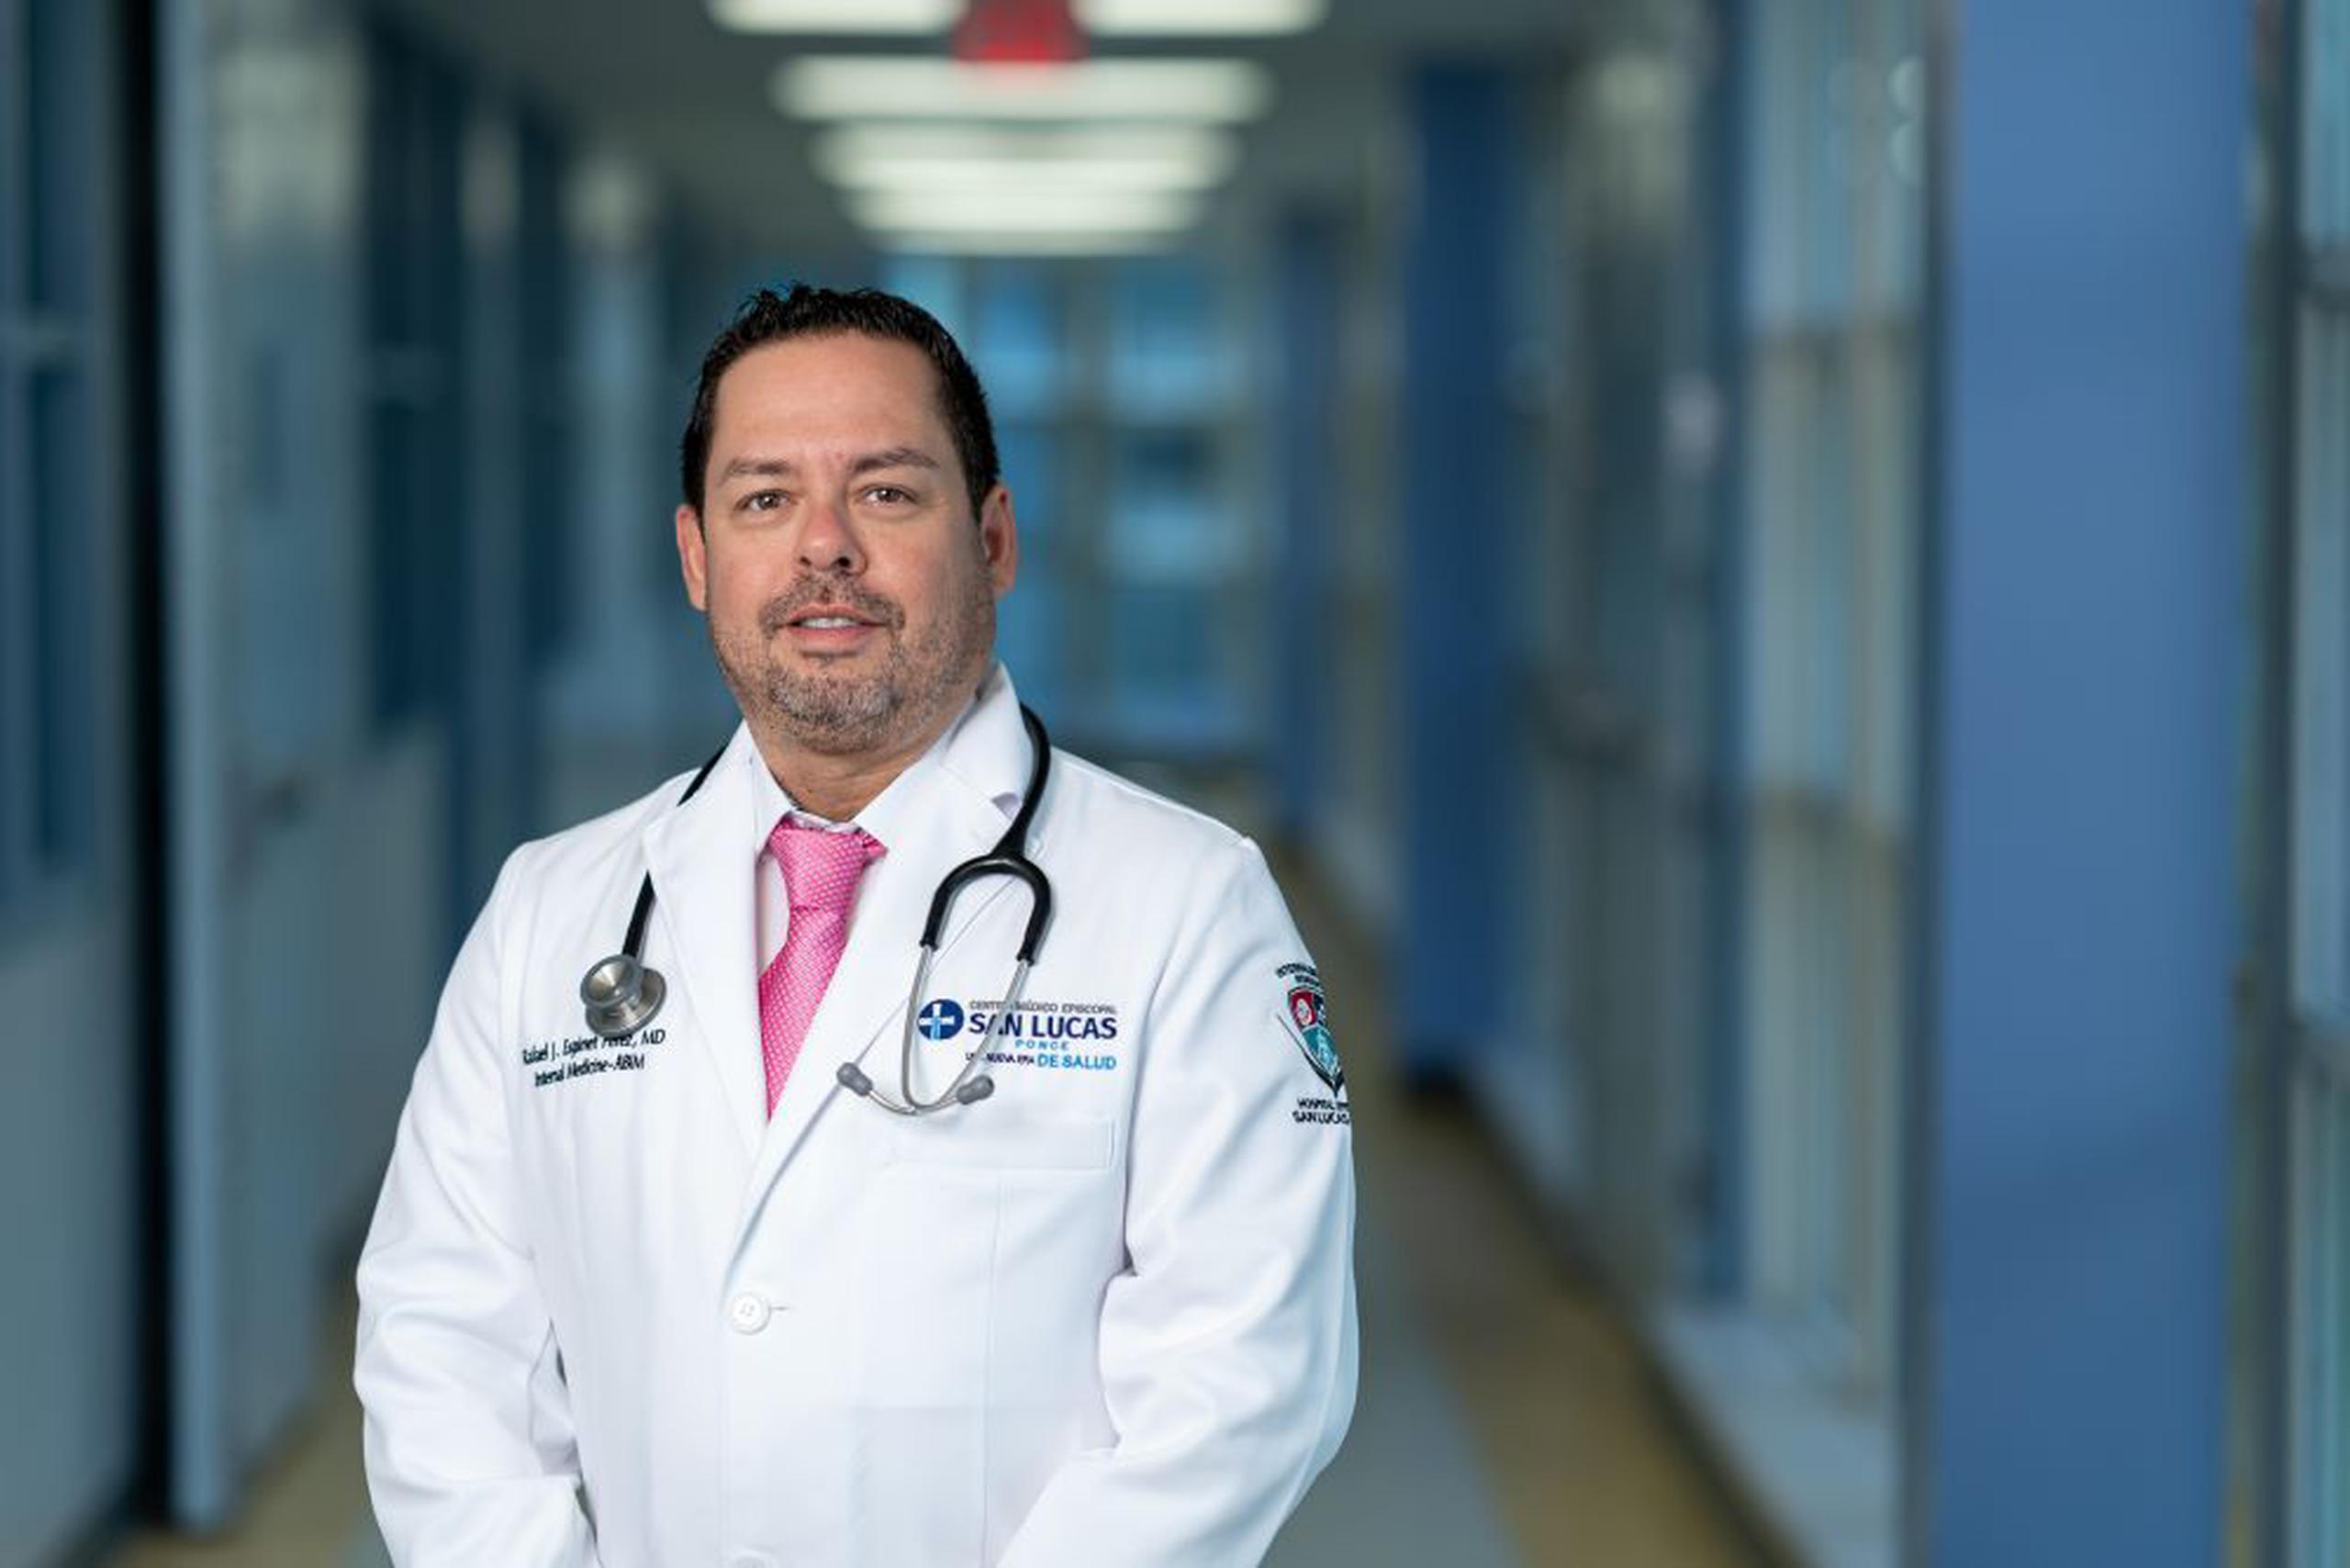 El doctor Rafael Espinet Pérez, médico internista en el Centro Médico Episcopal San Lucas.